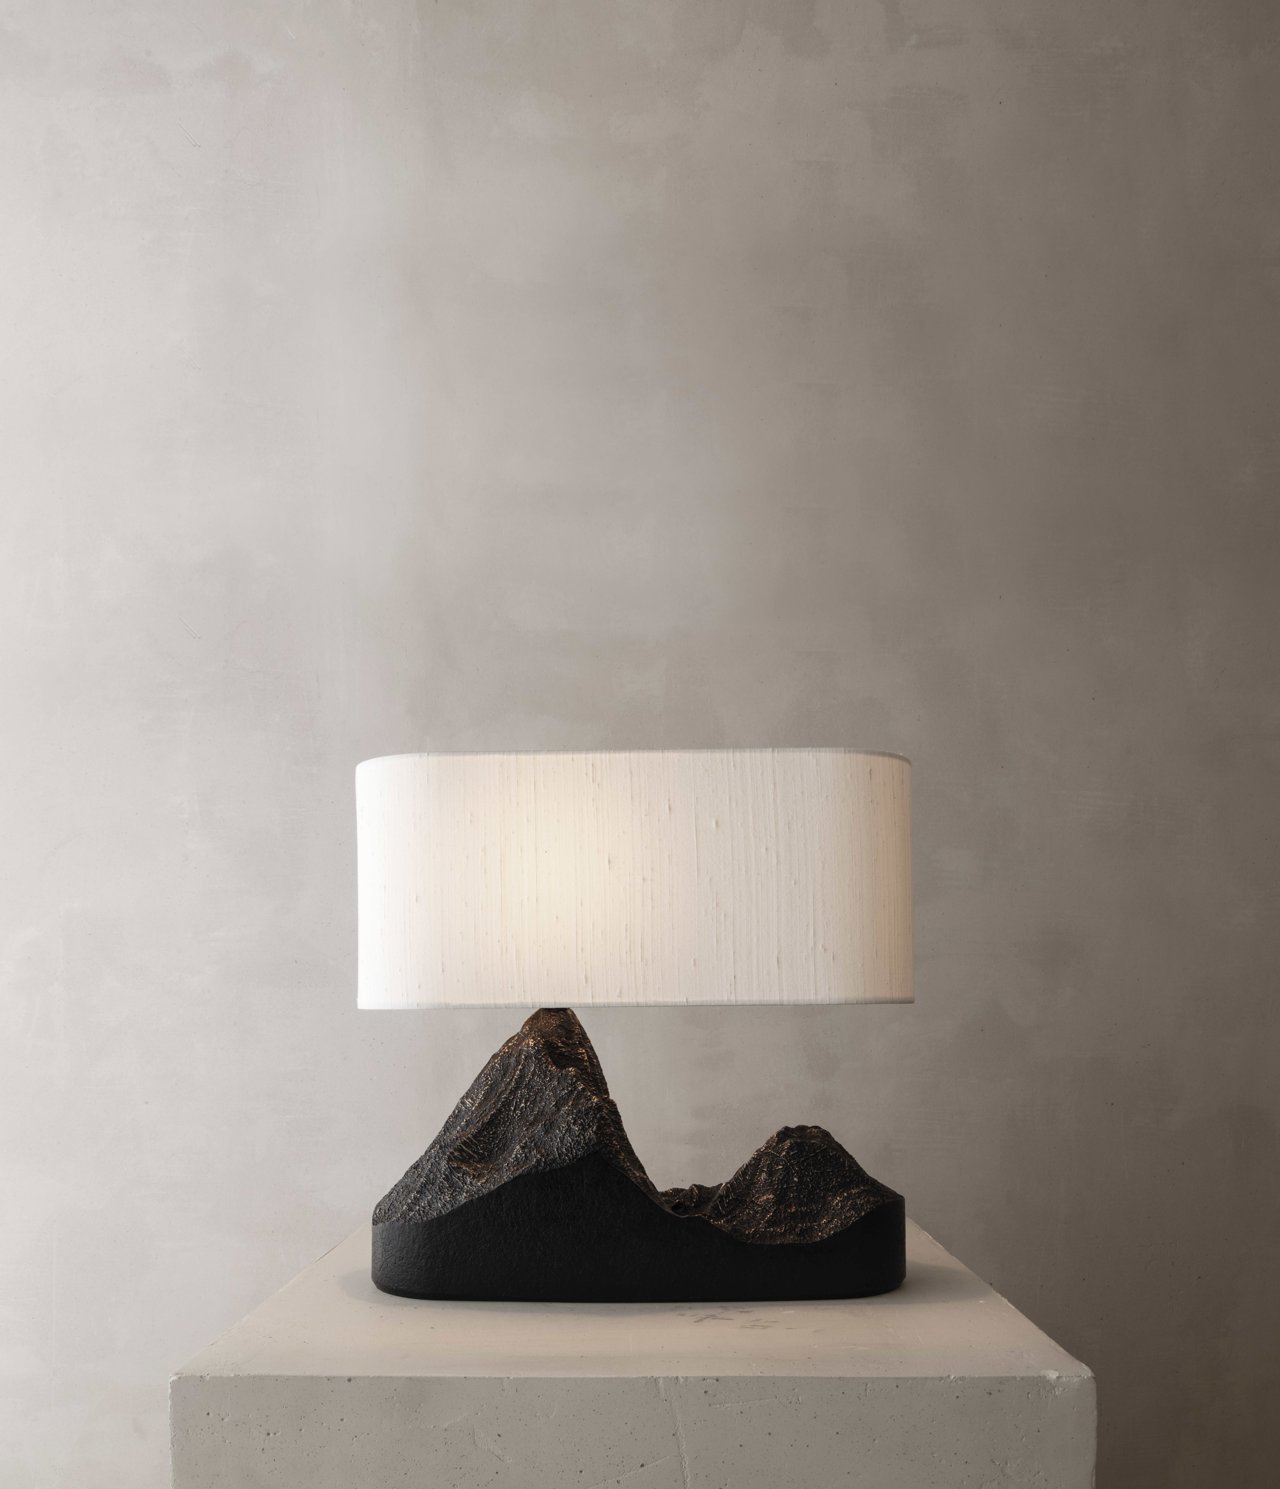 Lámpara de su colección Topographic Memories, presentada por Ateliers Courbet este último Design Miami, una edición limitada de lámparas y mesas de bronce fundido y travertino